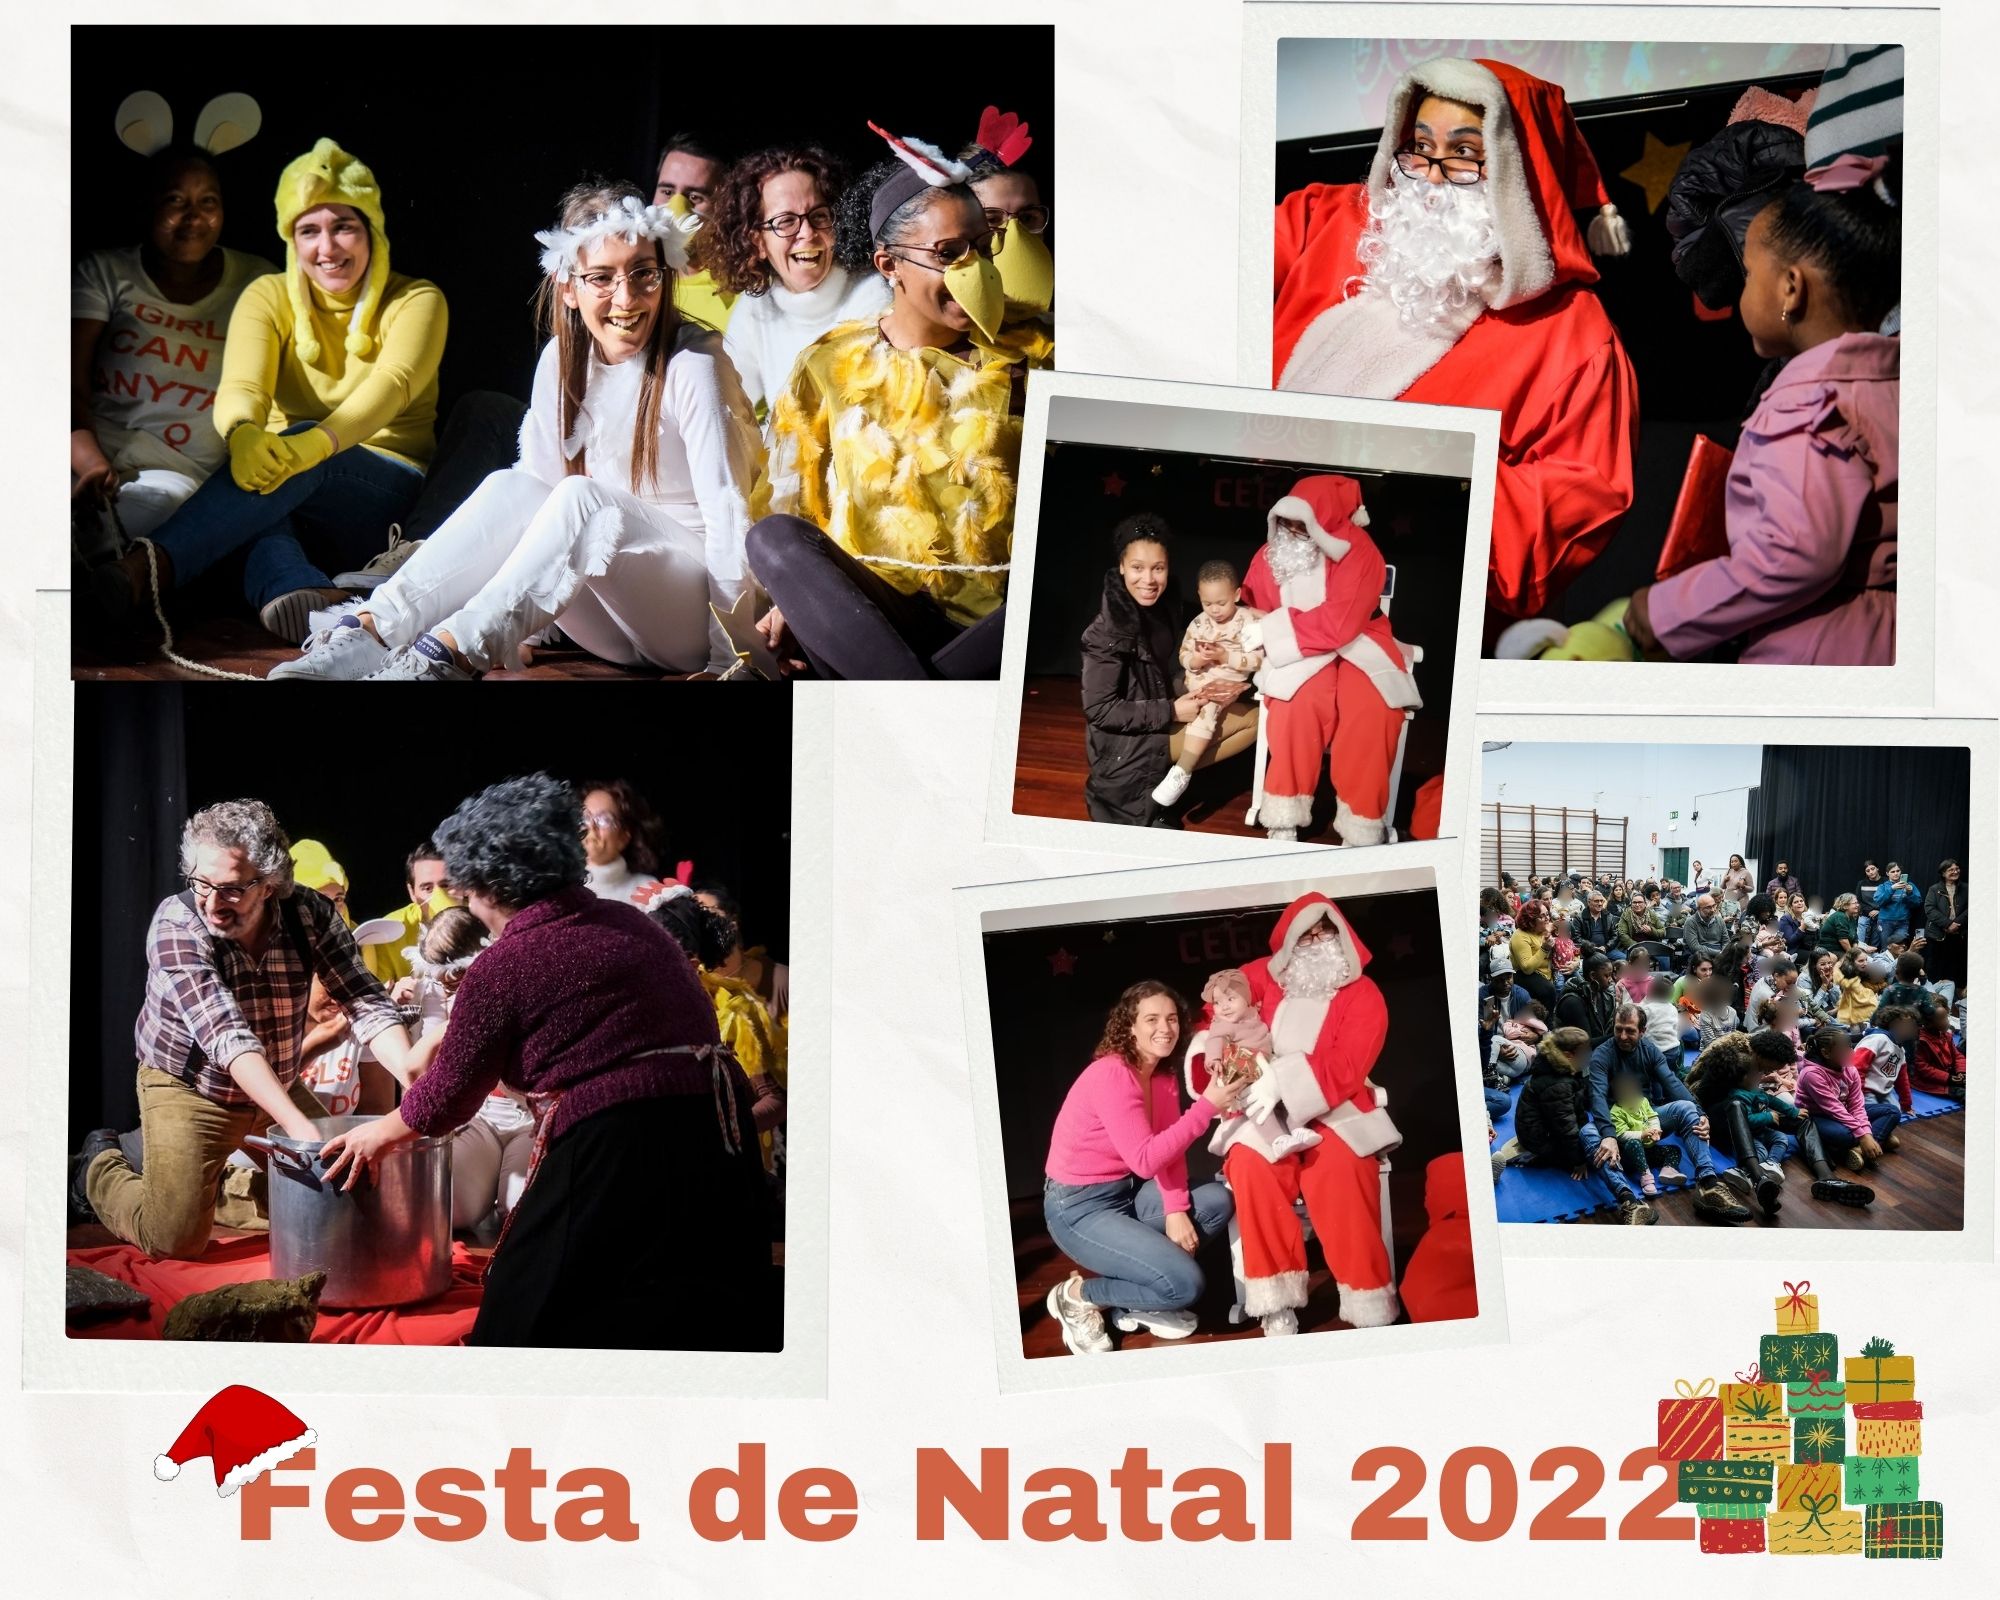 FESTA DE NATAL 2022